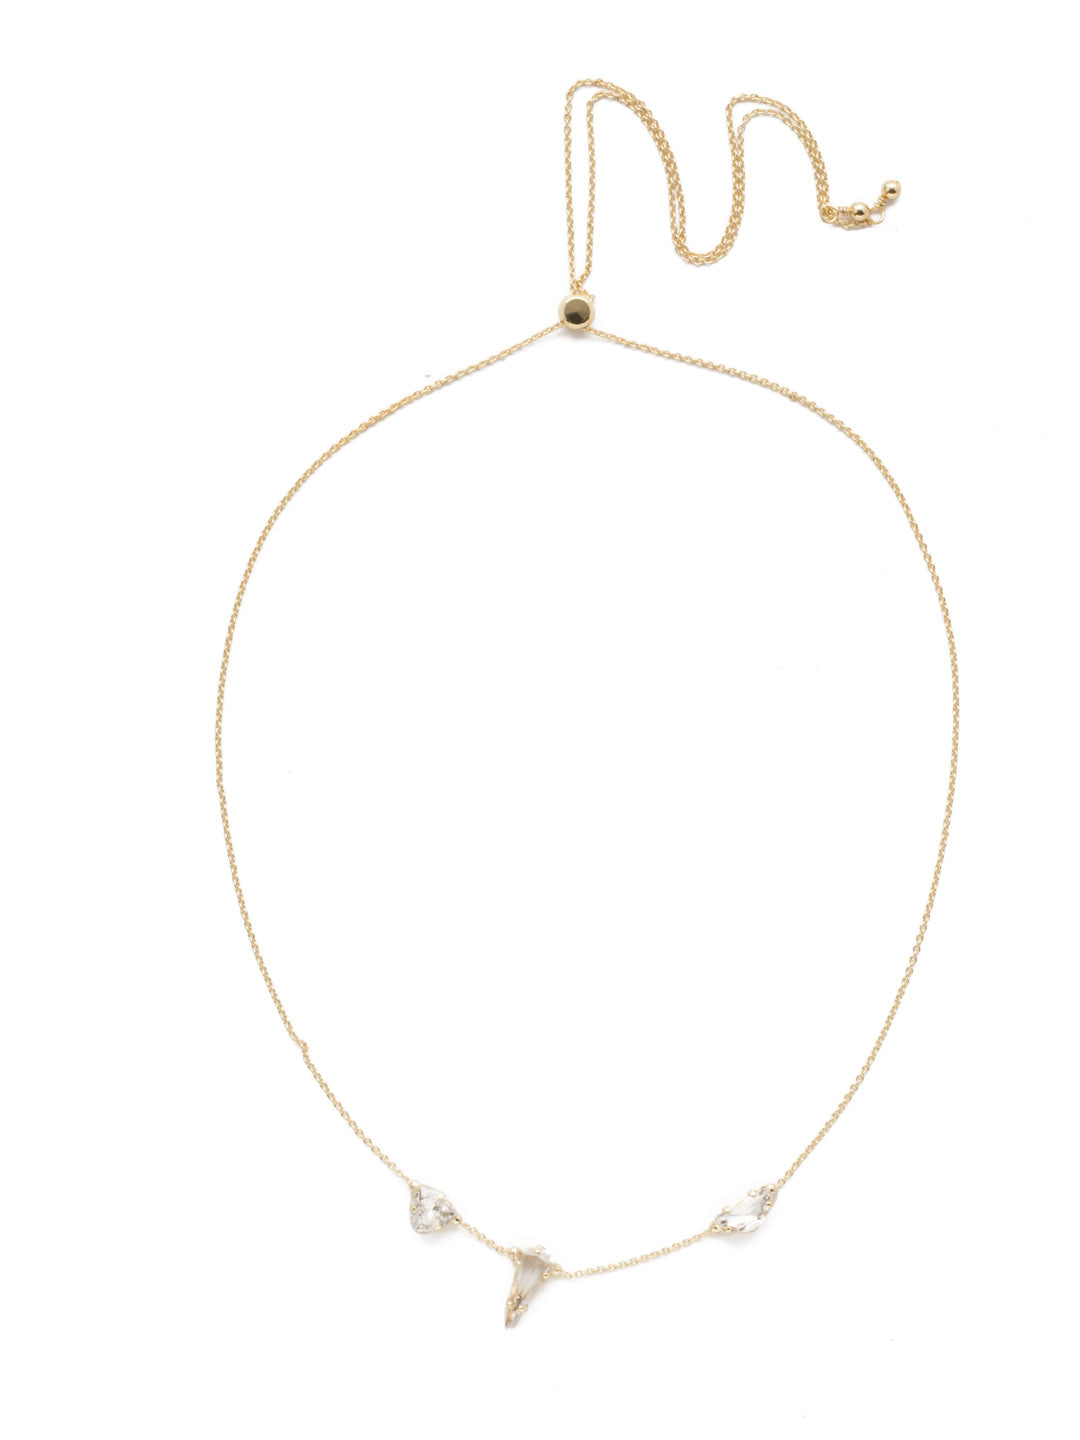 Arielle Crystal Pendant Necklace - 4NEK13BGCRY